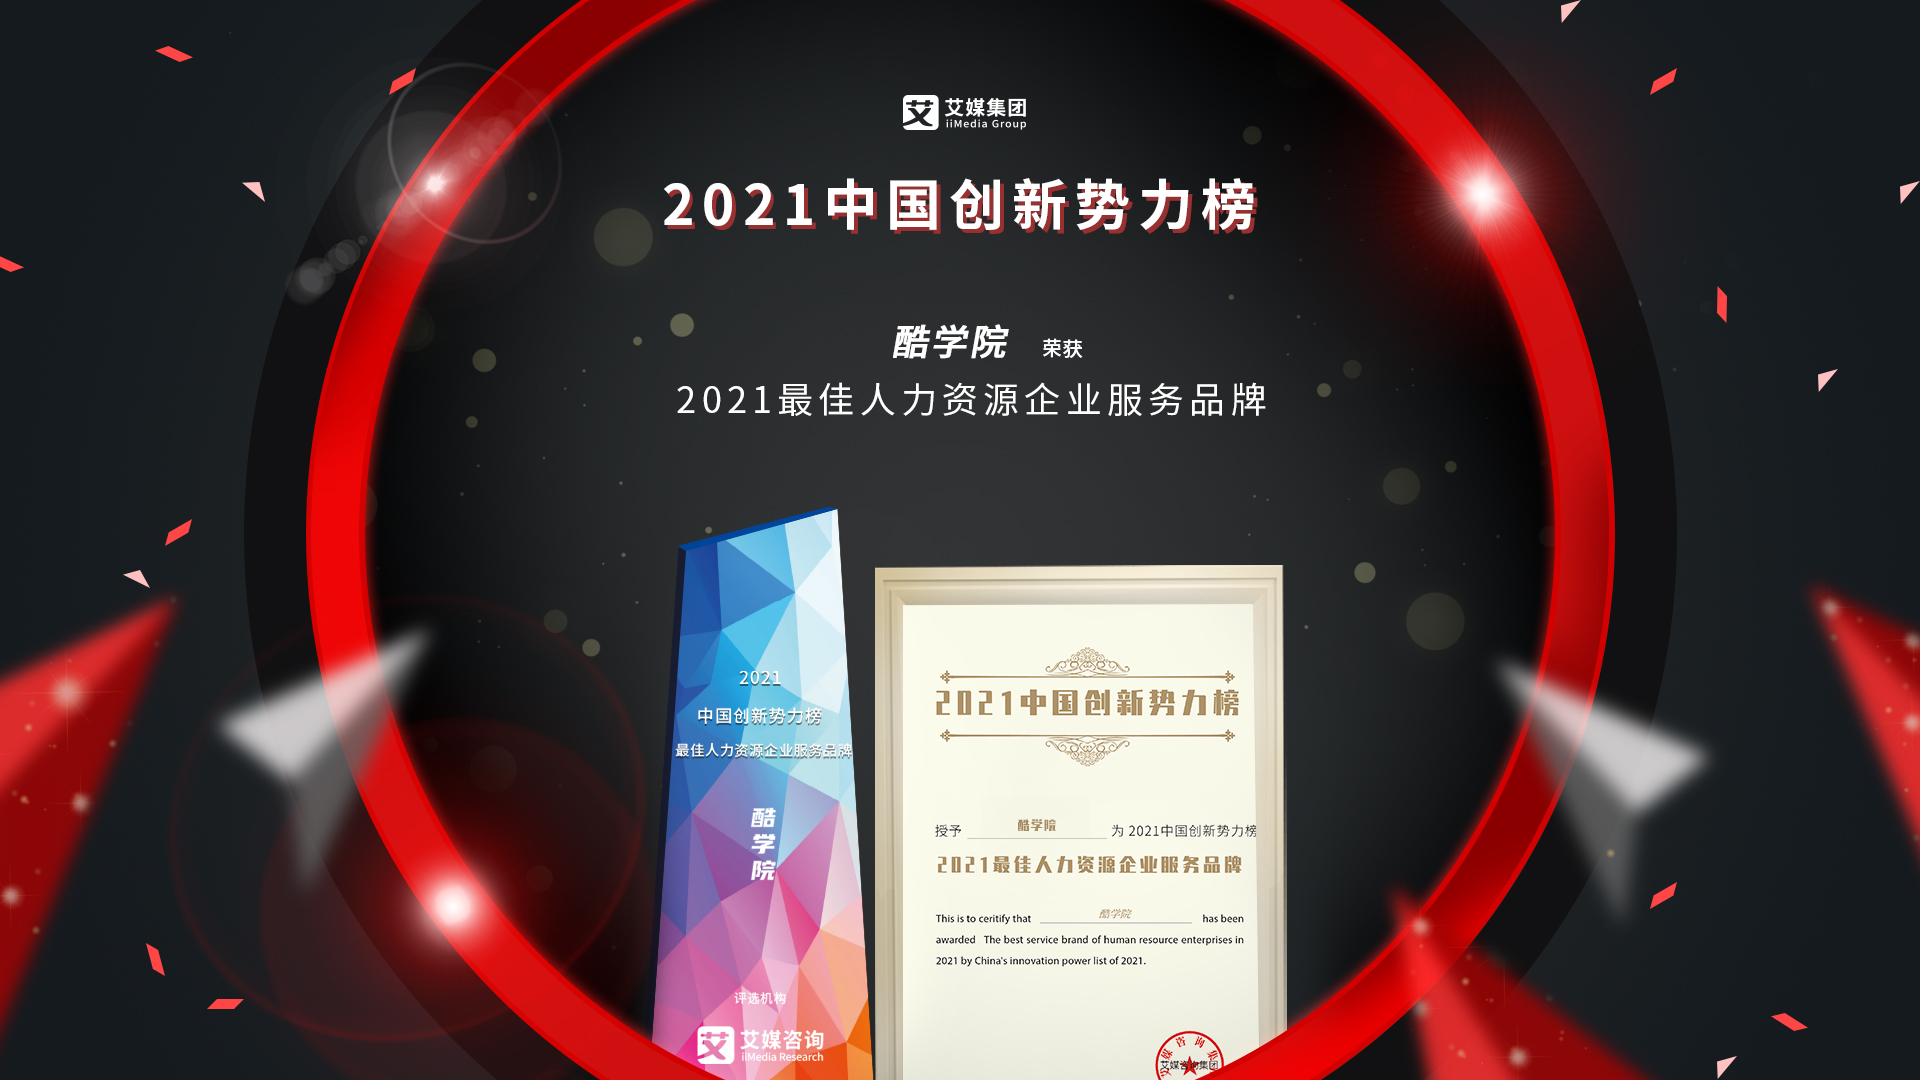 酷学院斩获2021中国创新势力榜“最佳人力资源企业服务品牌”大奖